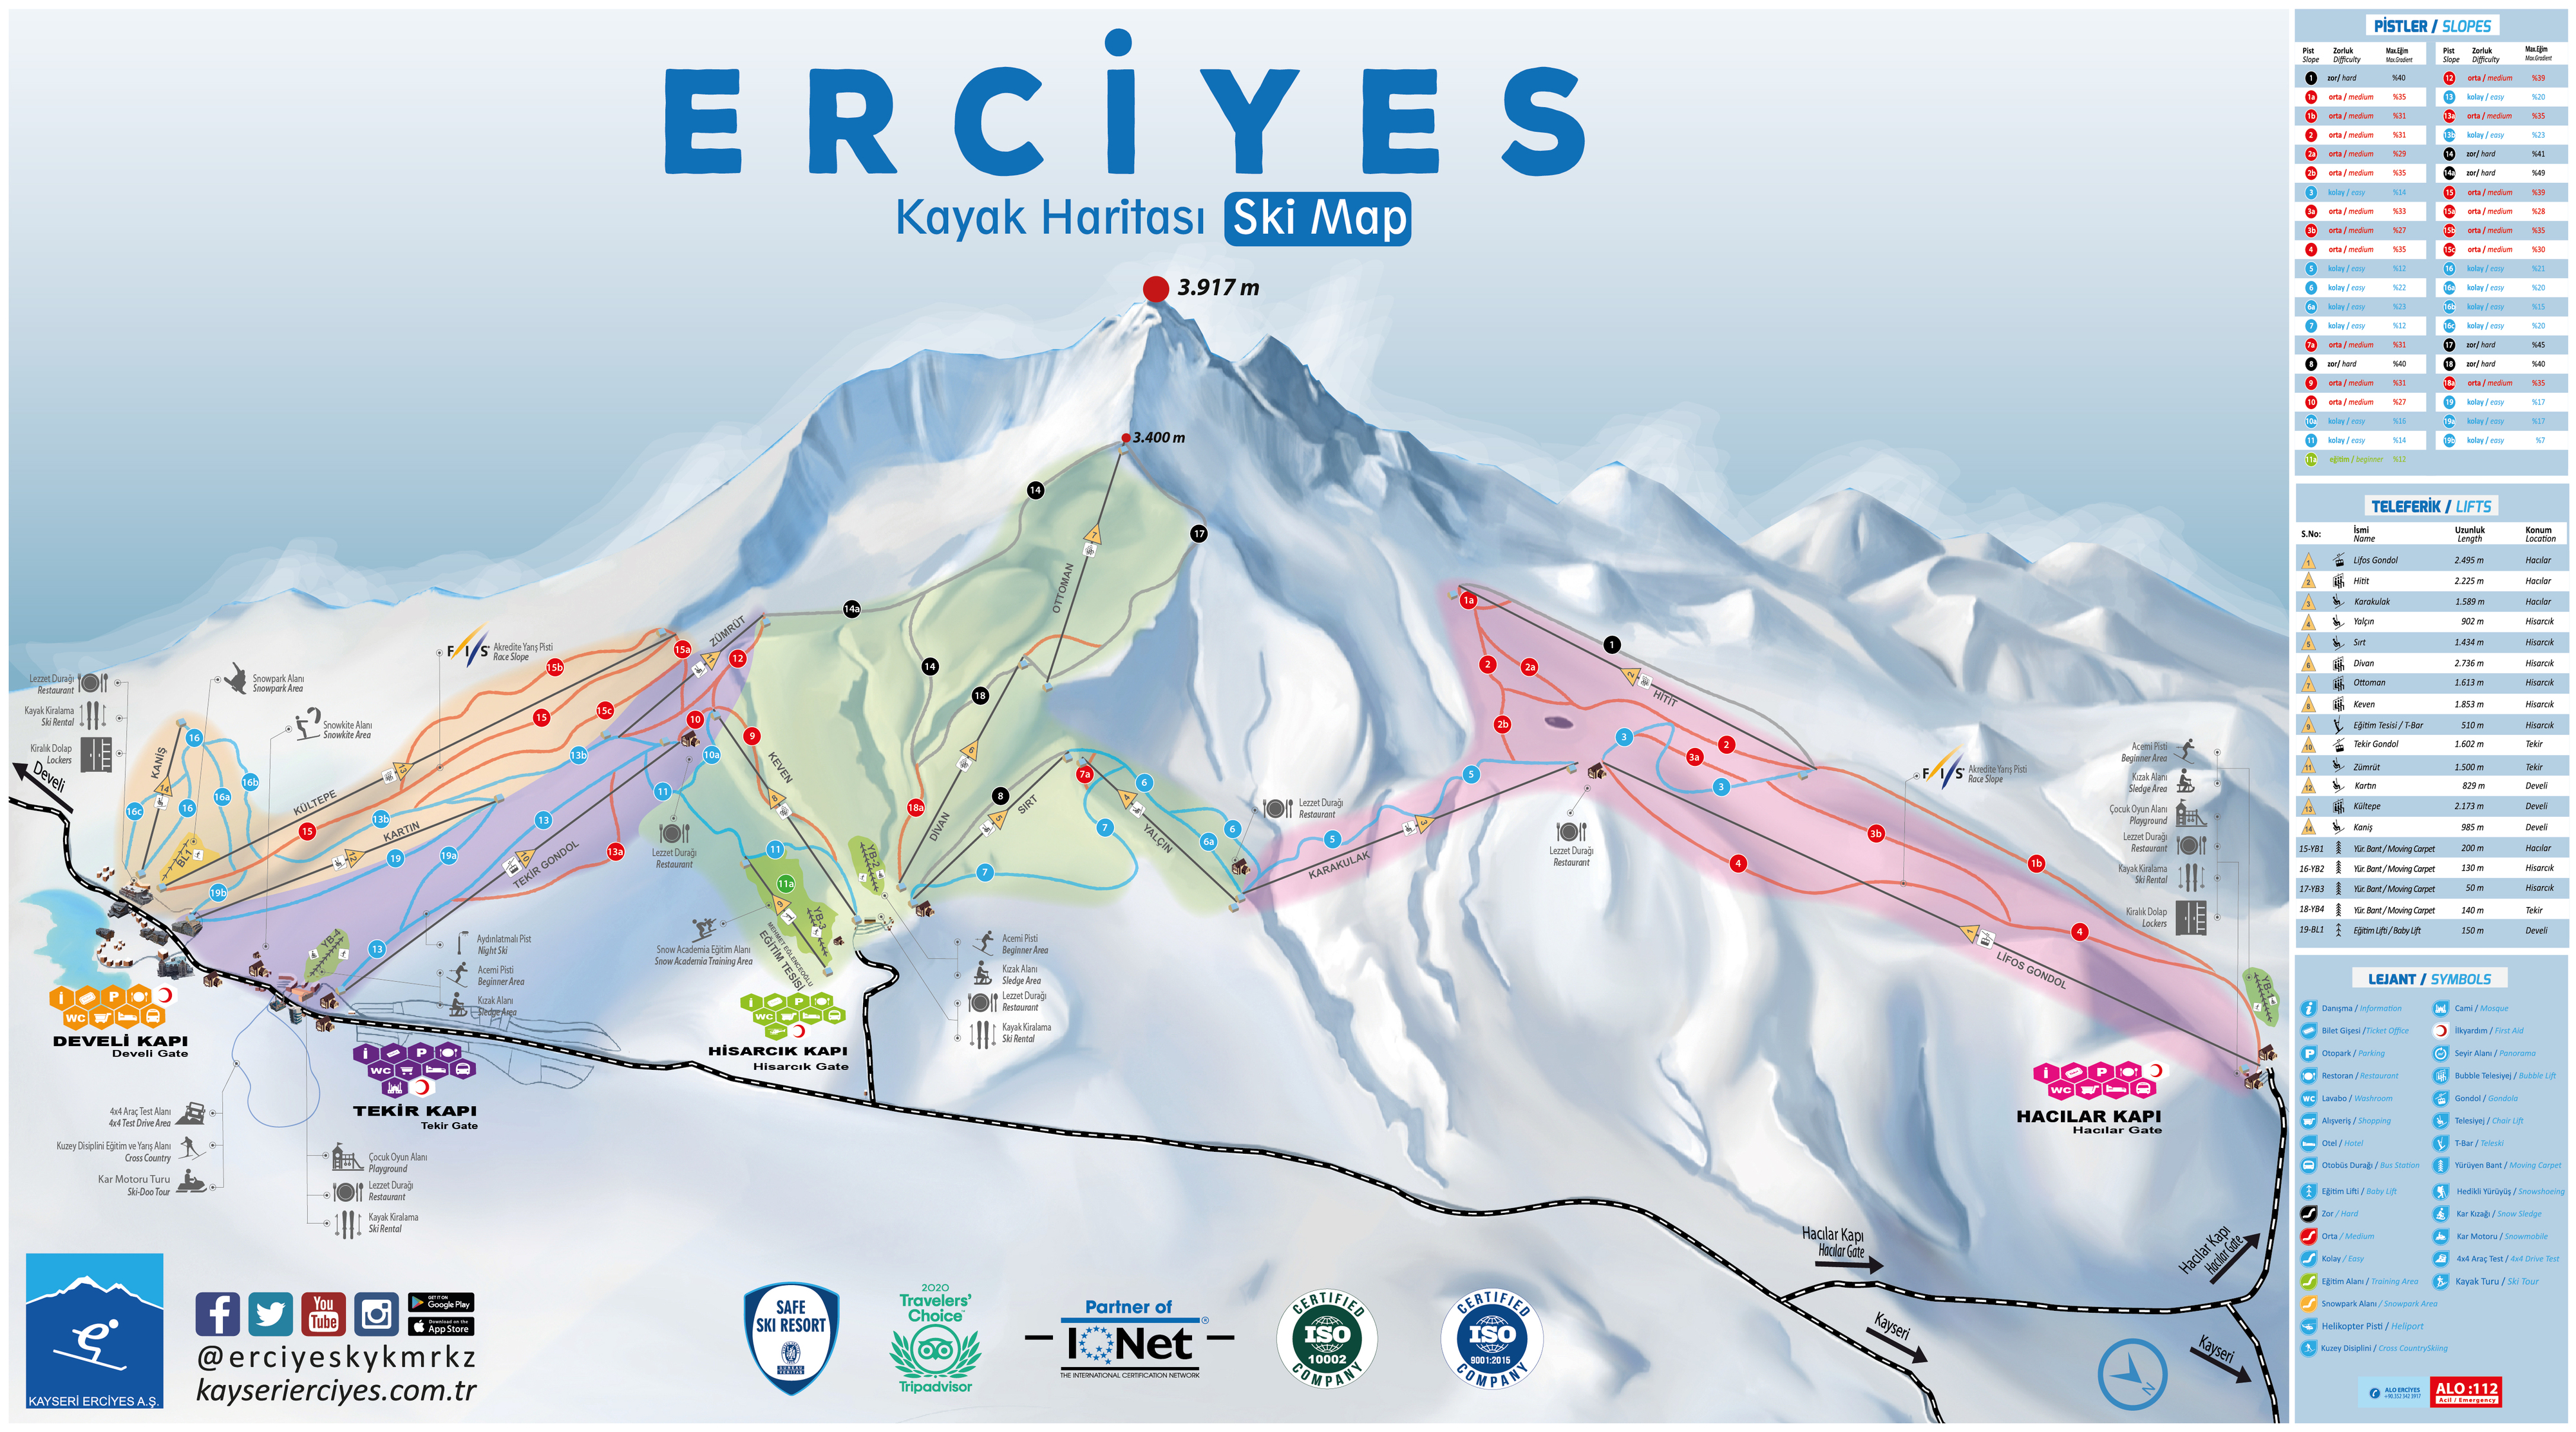 Erciyes Ski Resort Piste / Trail Map